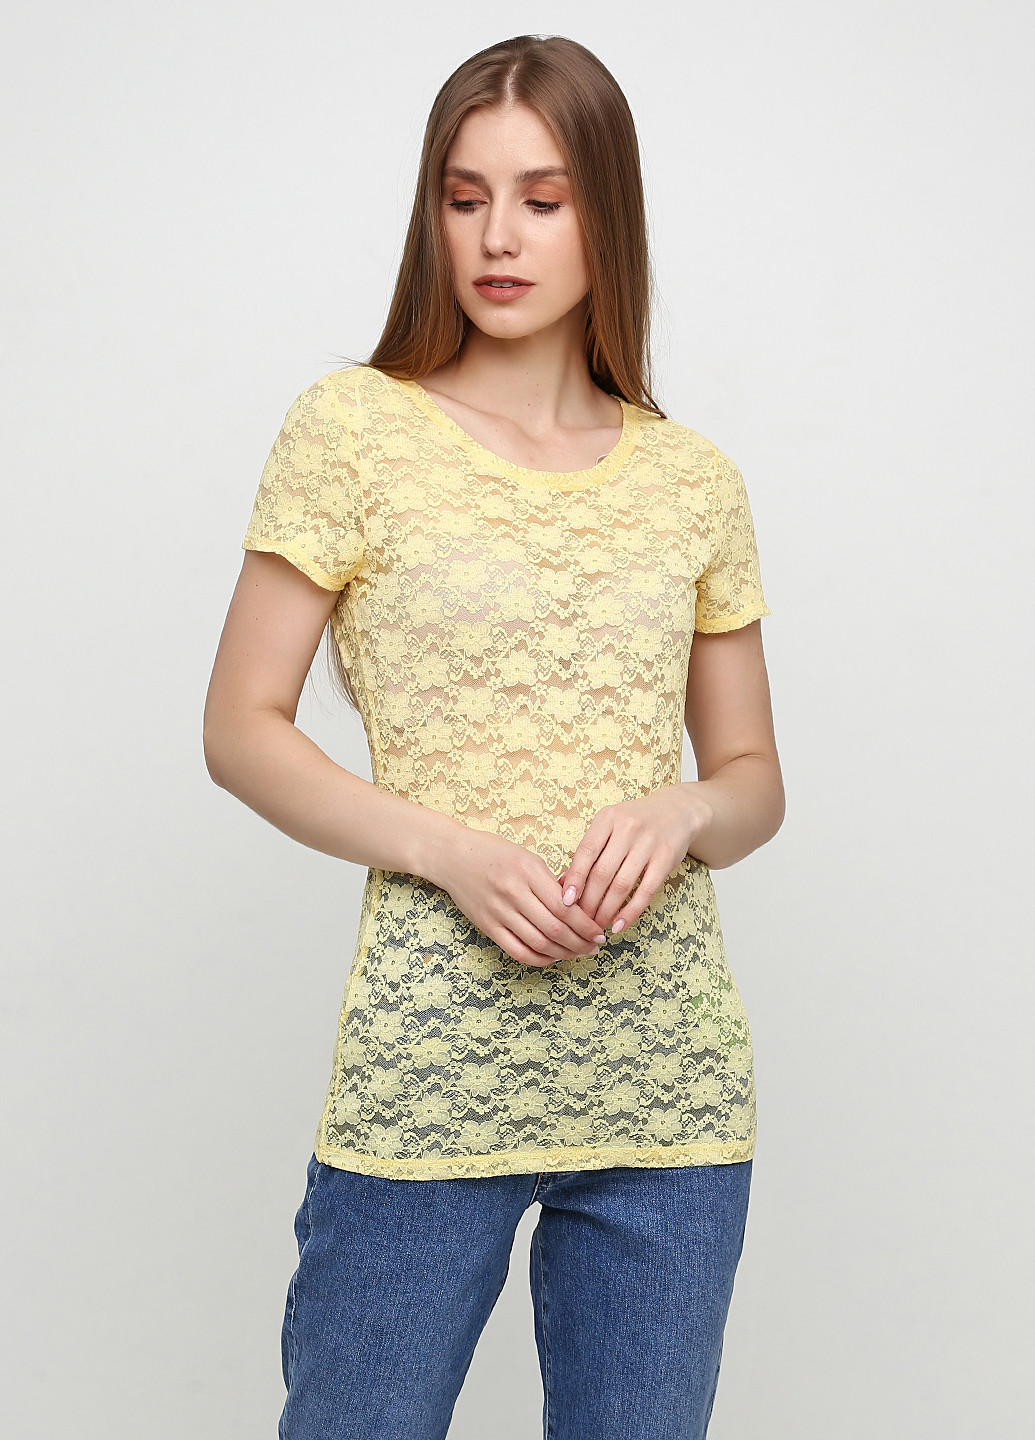 Жовта літня футболка H&M